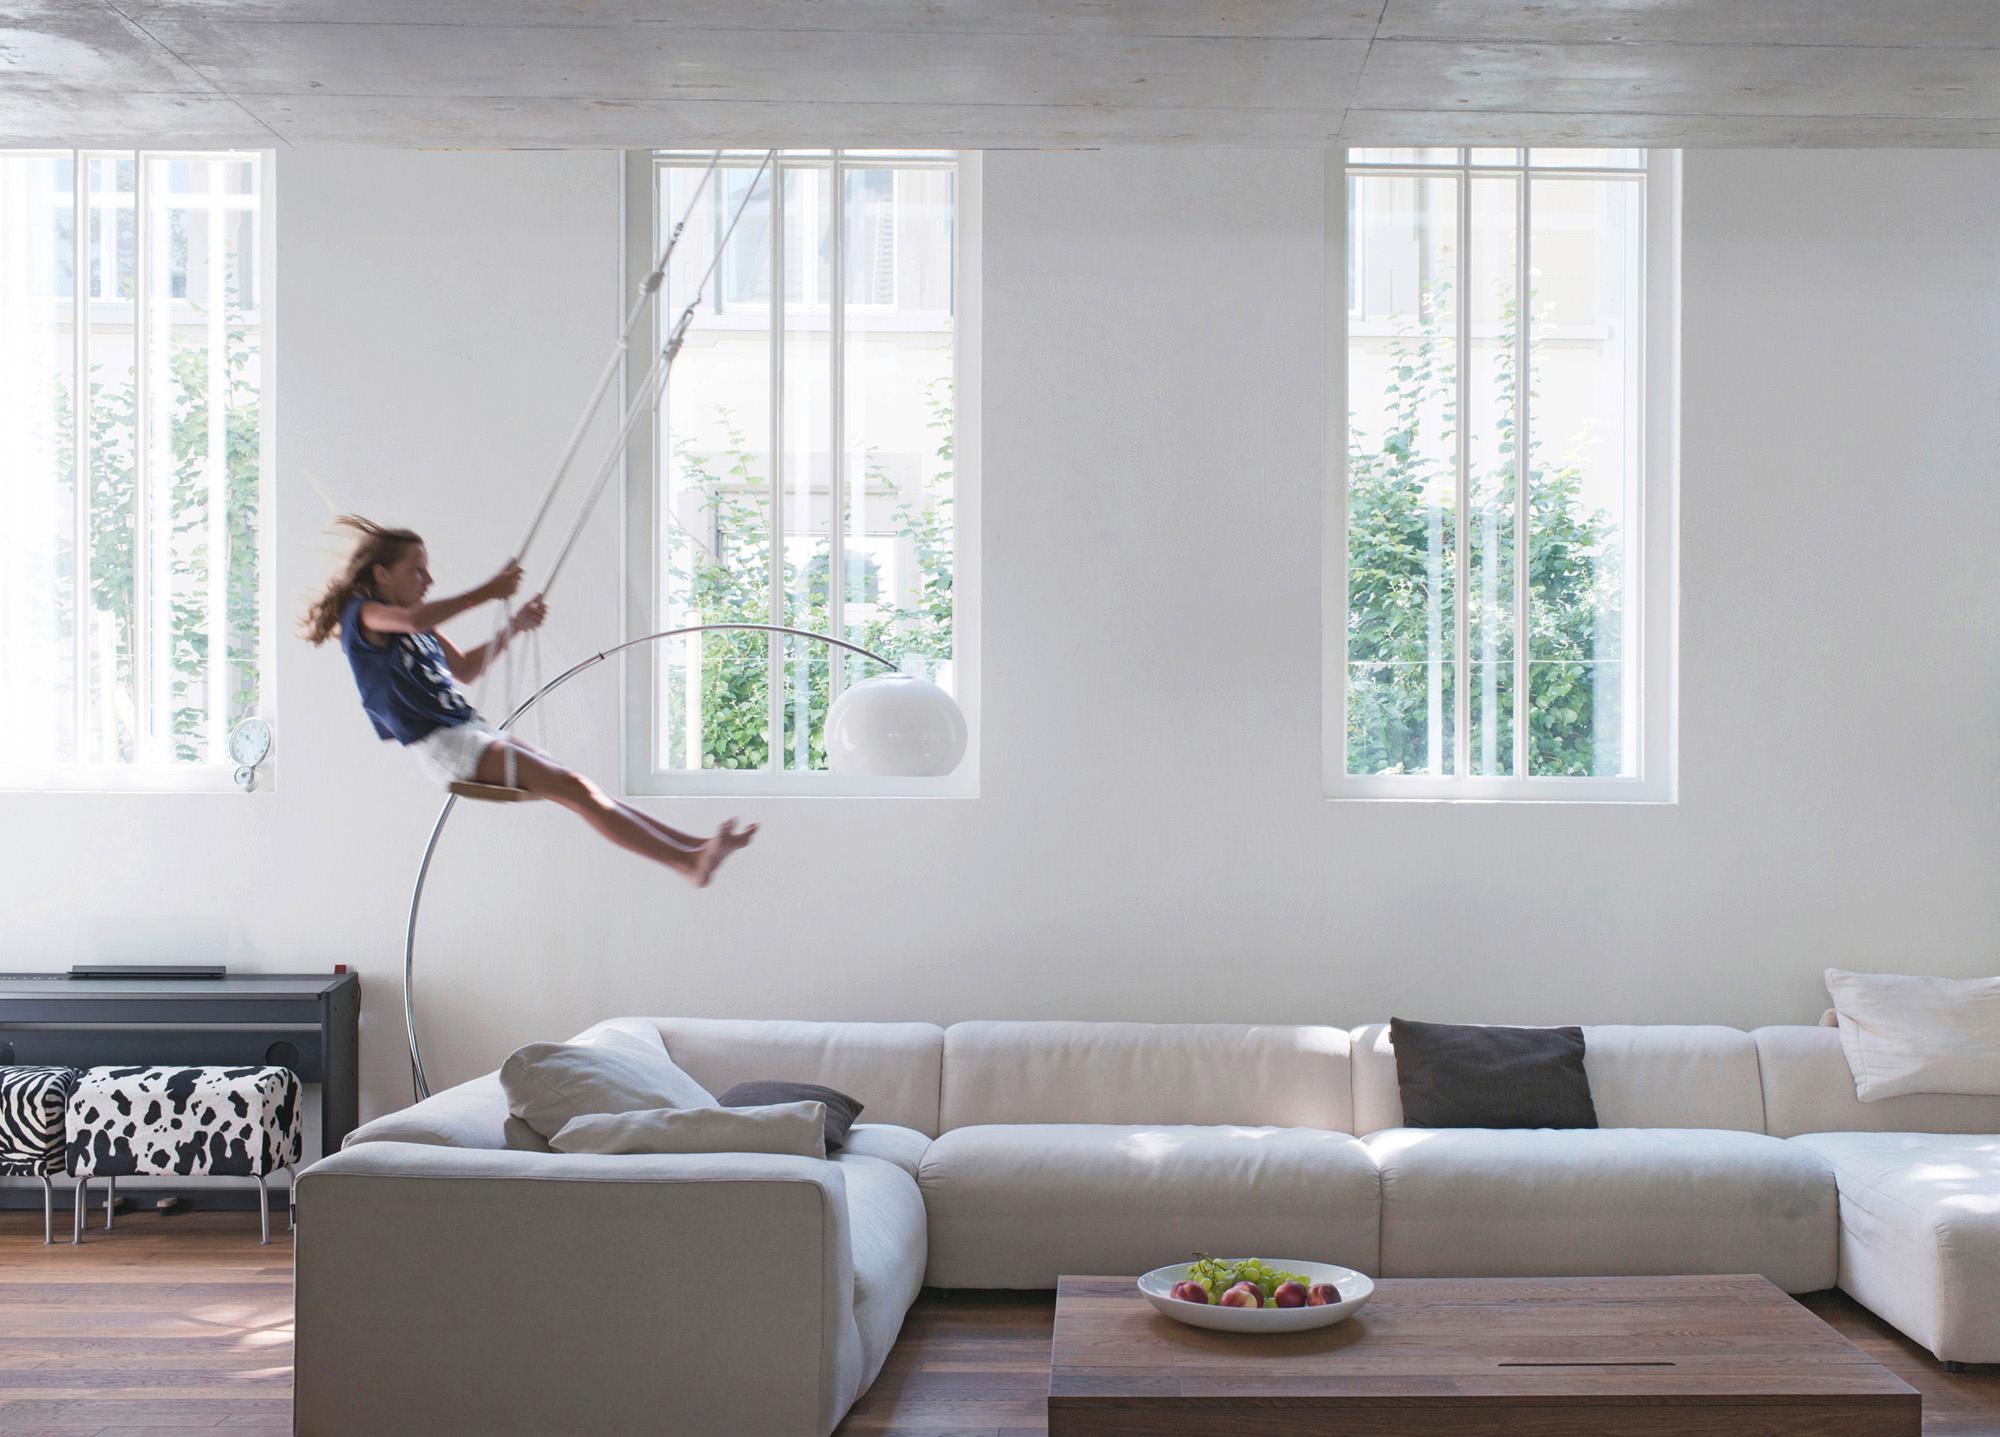 Architektur-Reportage Bern: die hohe Raumhöhe erlaubt sogar eine Kinderschaukel im Wohnzimmer